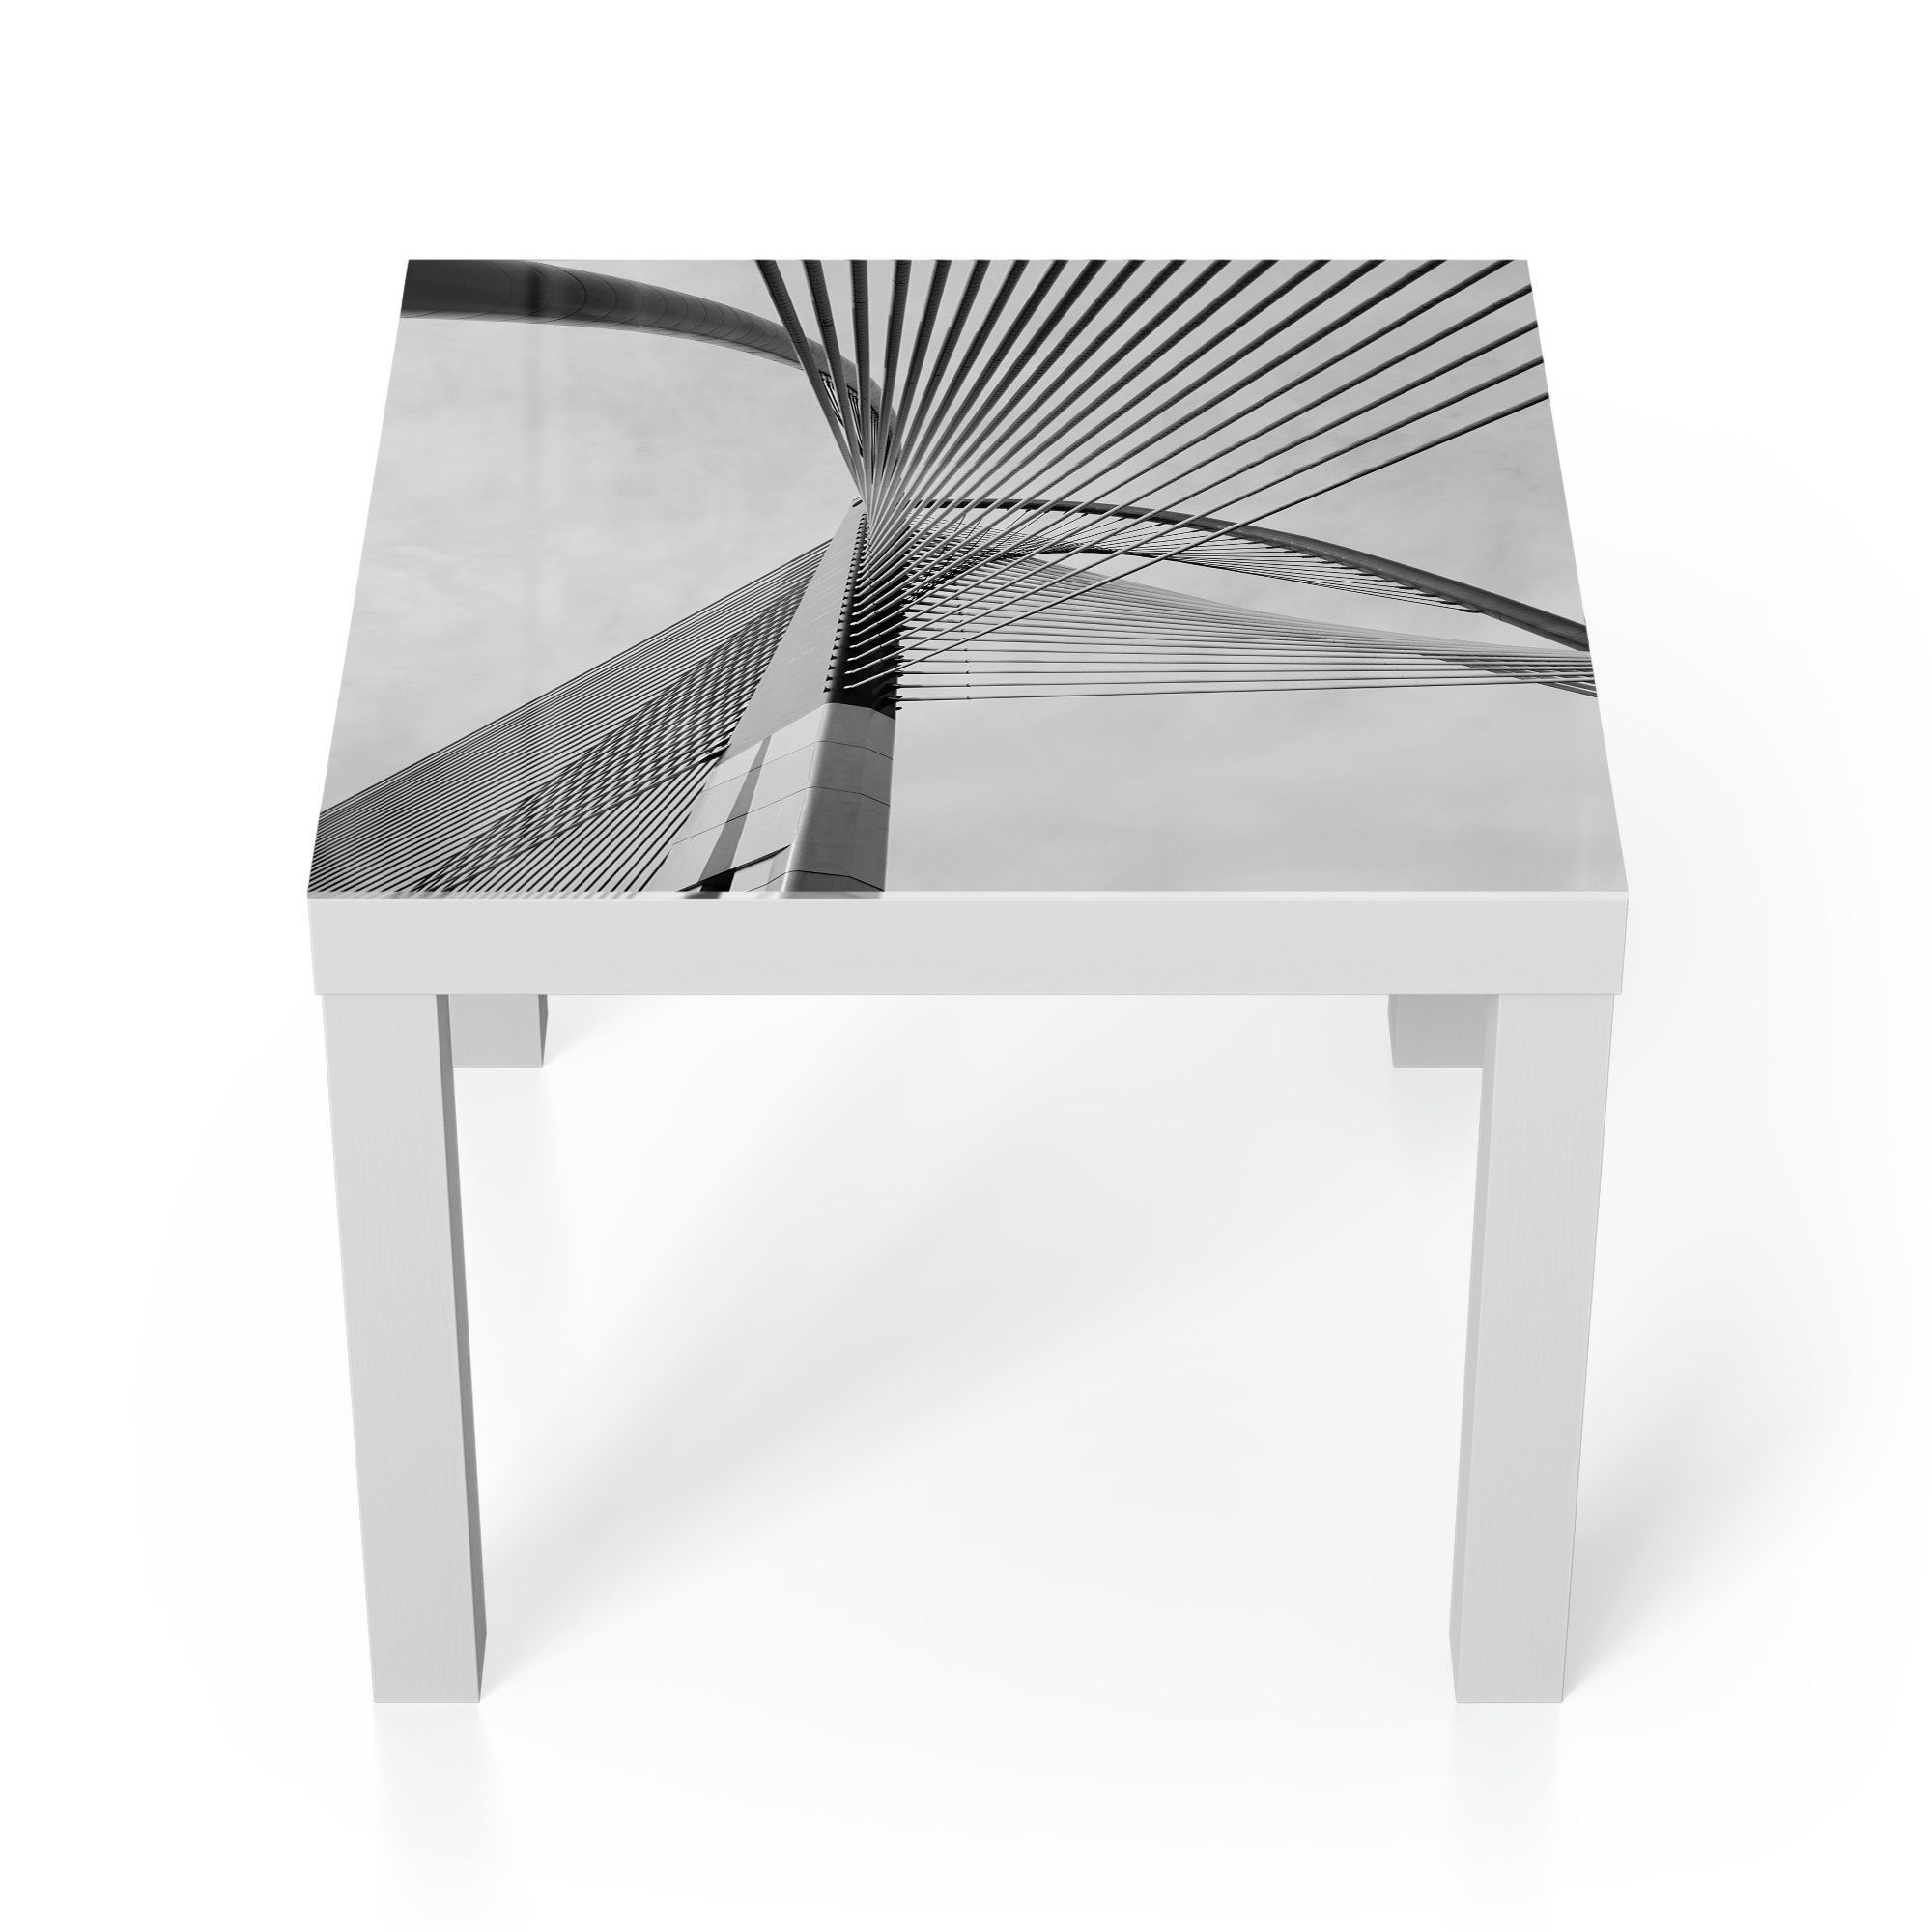 'Brückenseile Detail', im Glas Weiß modern Glastisch DEQORI Beistelltisch Couchtisch